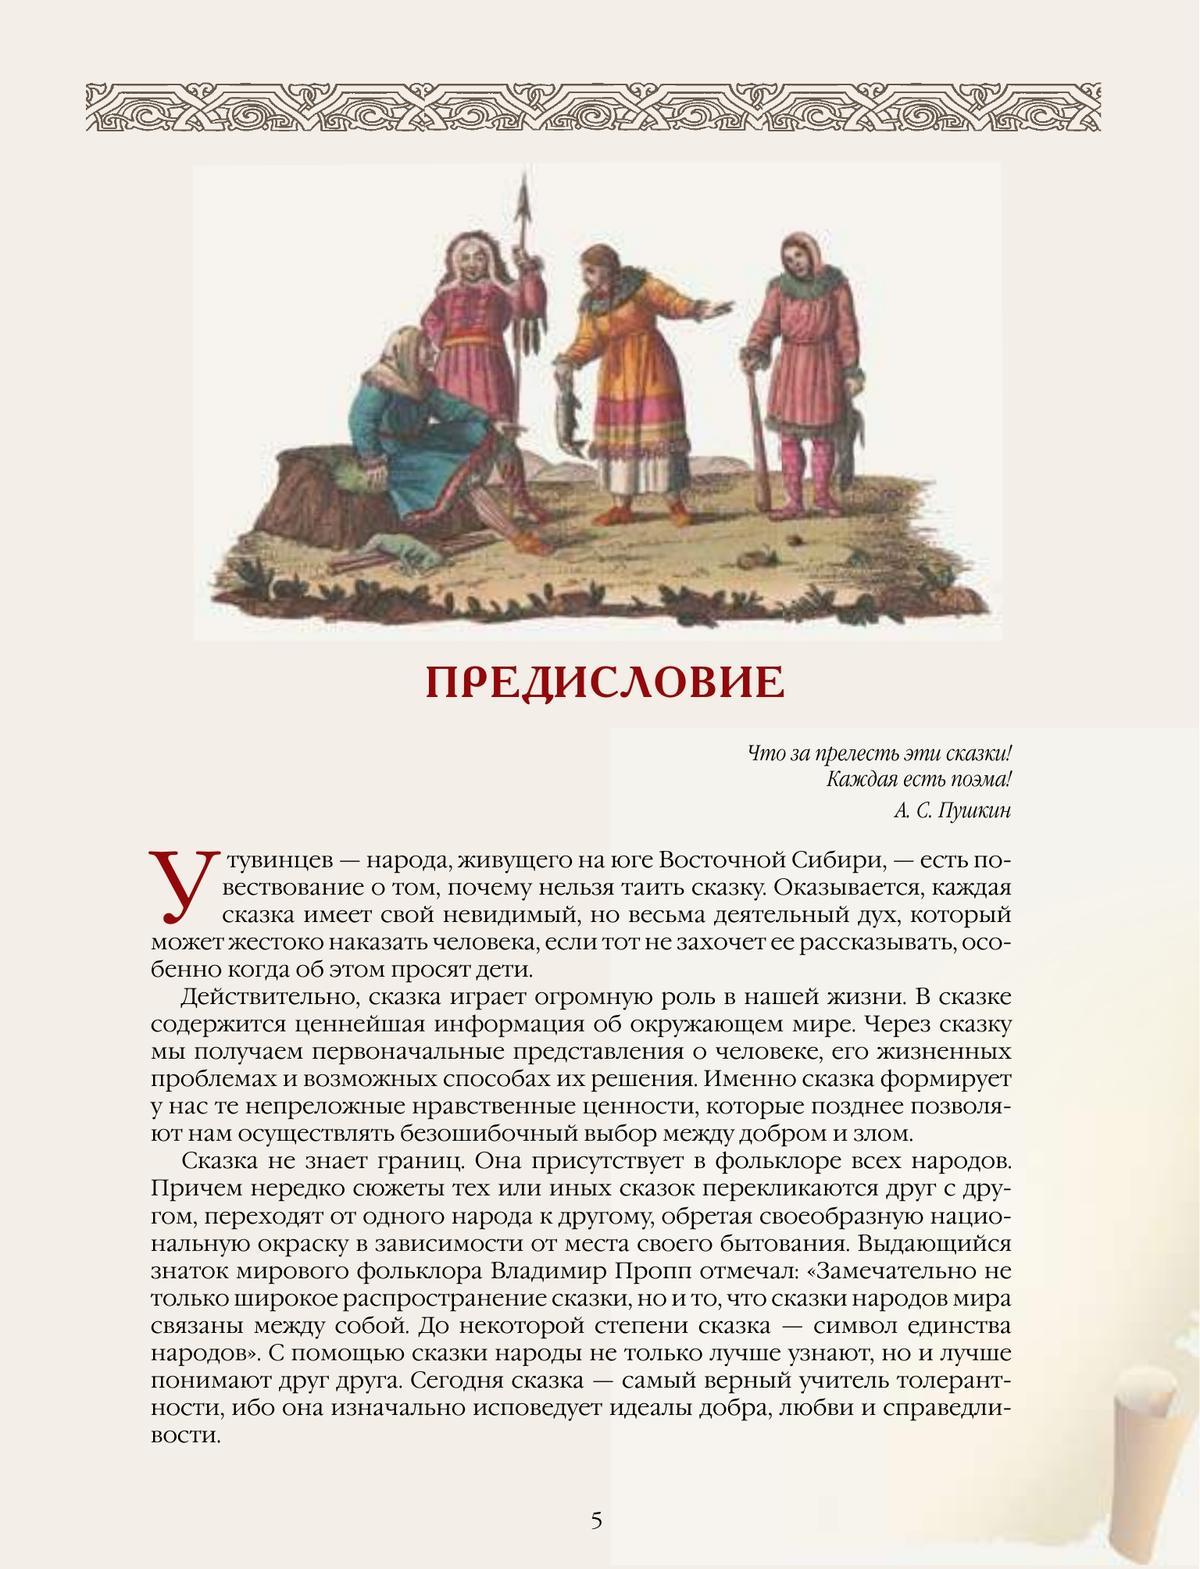 Сказки и легенды народов России 11